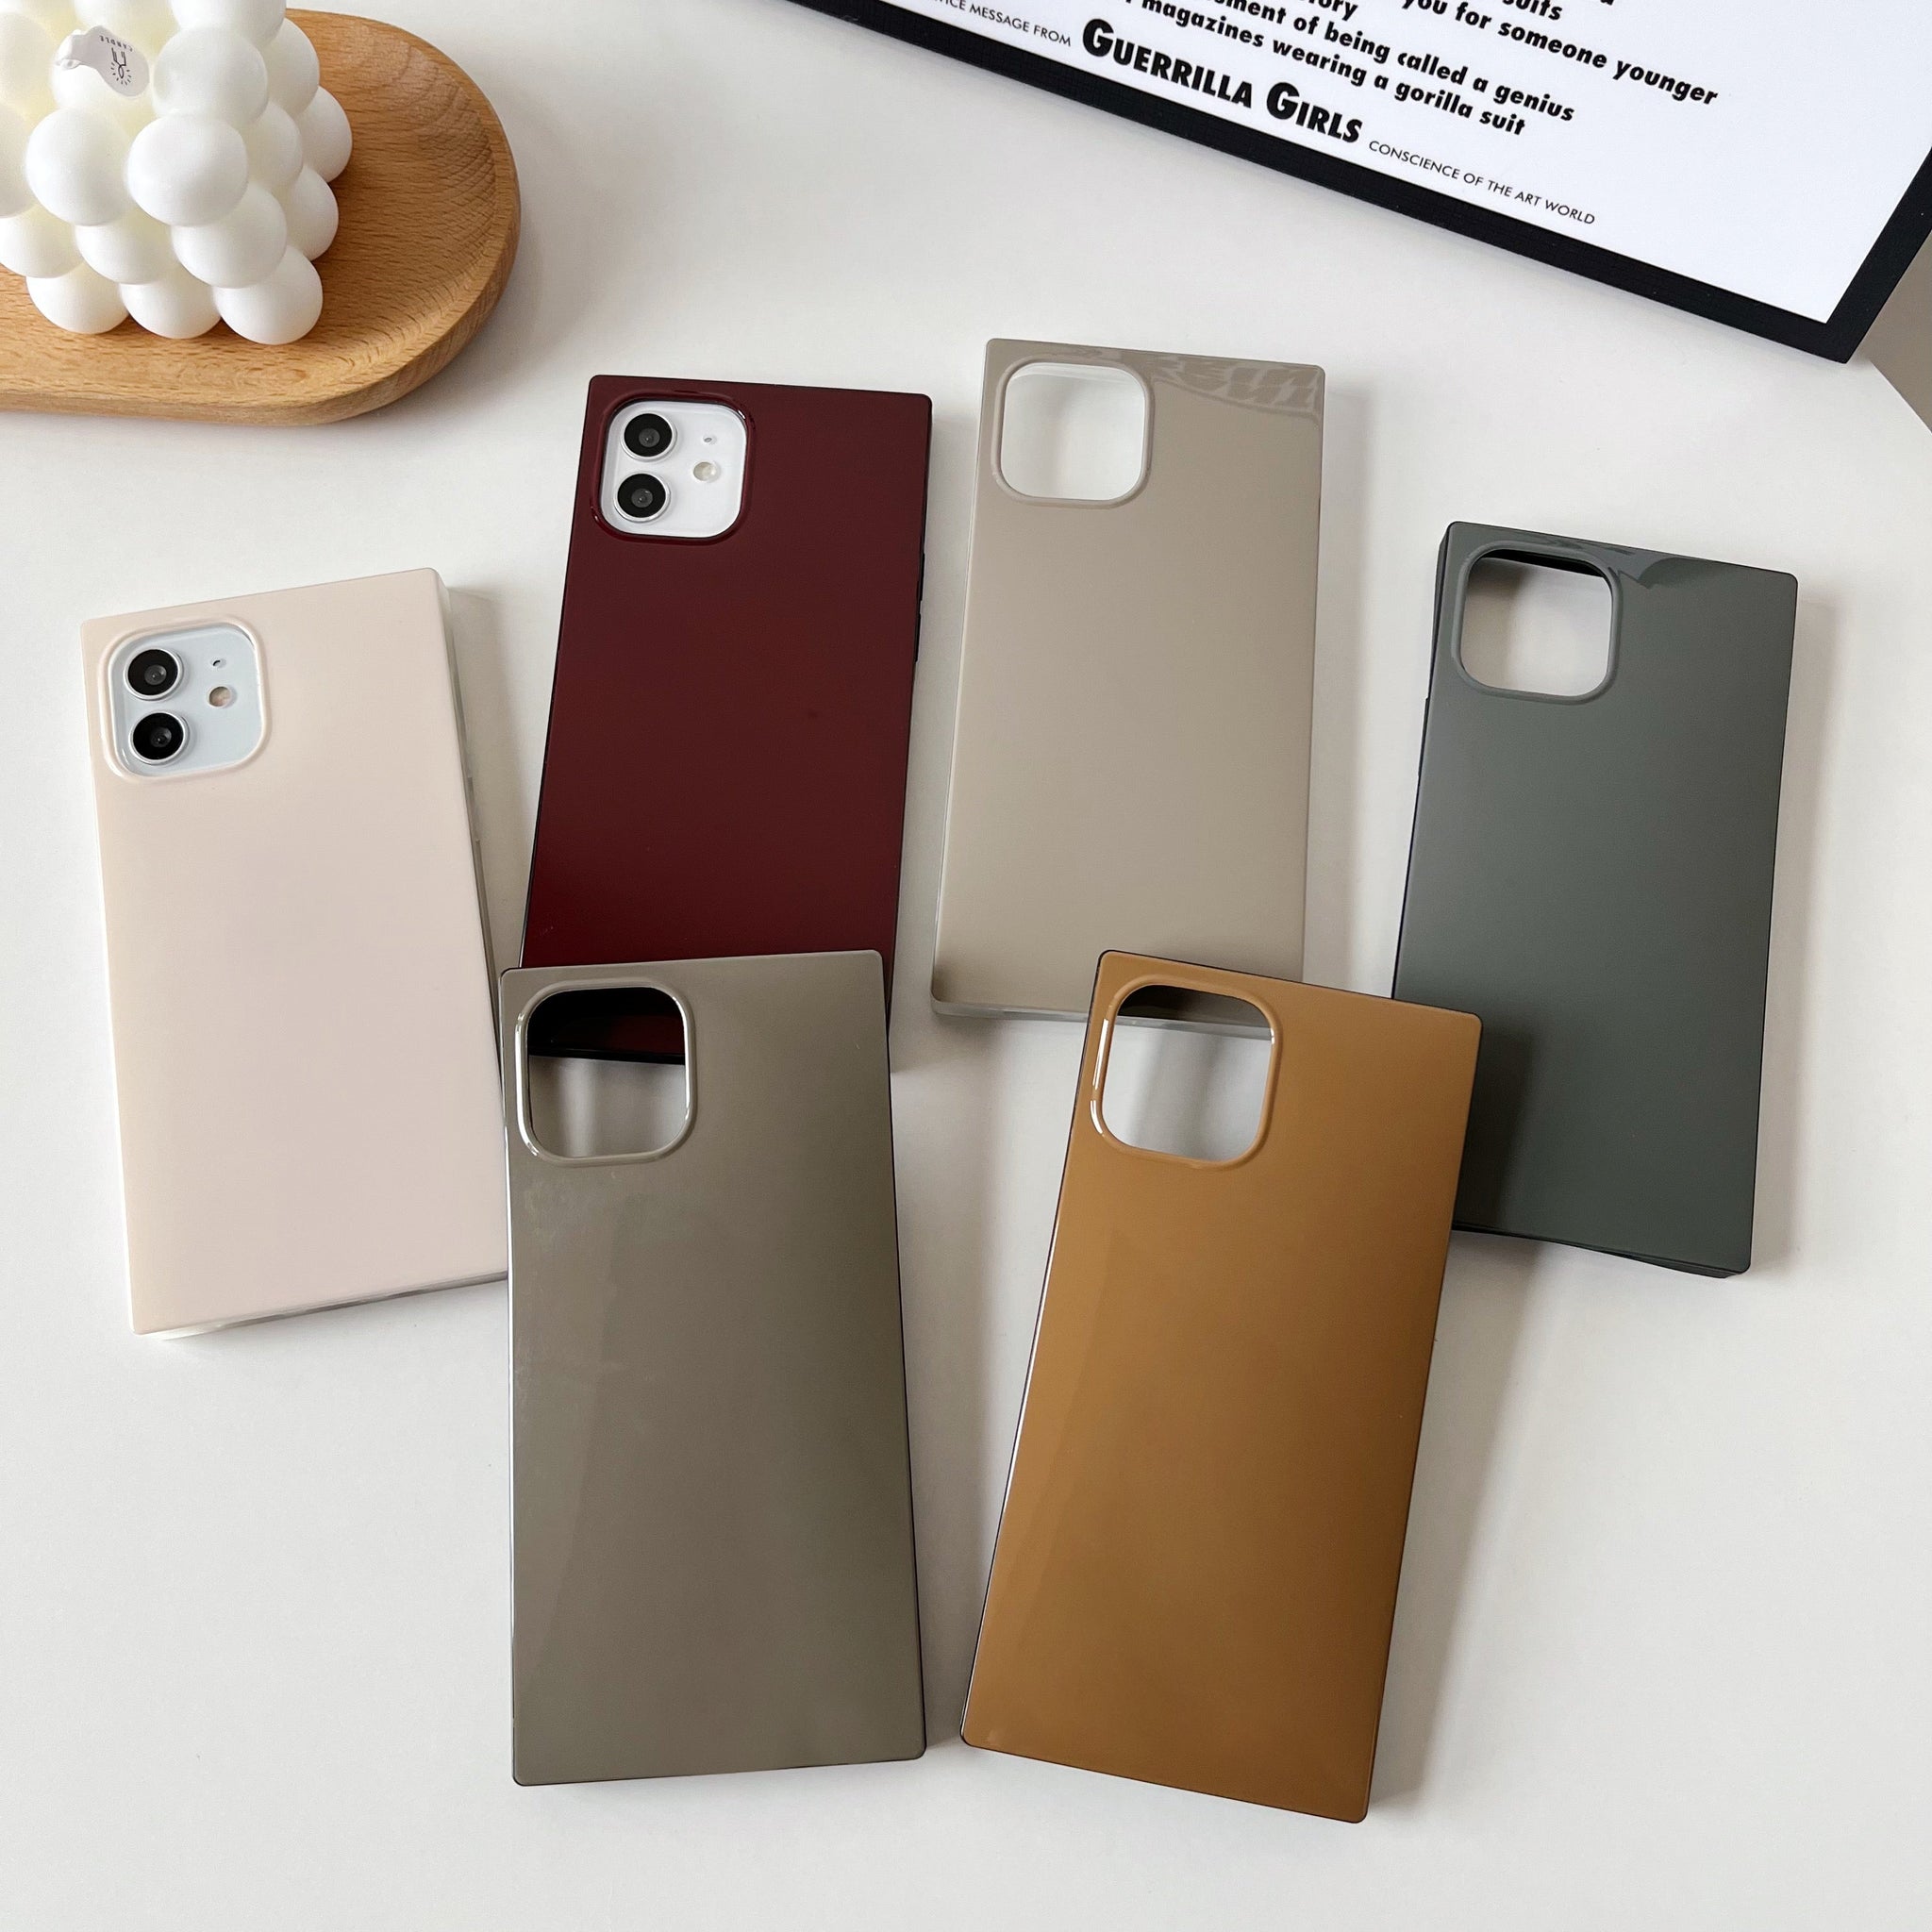 iPhone 12 Pro Max Case Square Neutral Plain Color (Asphalt Gray)